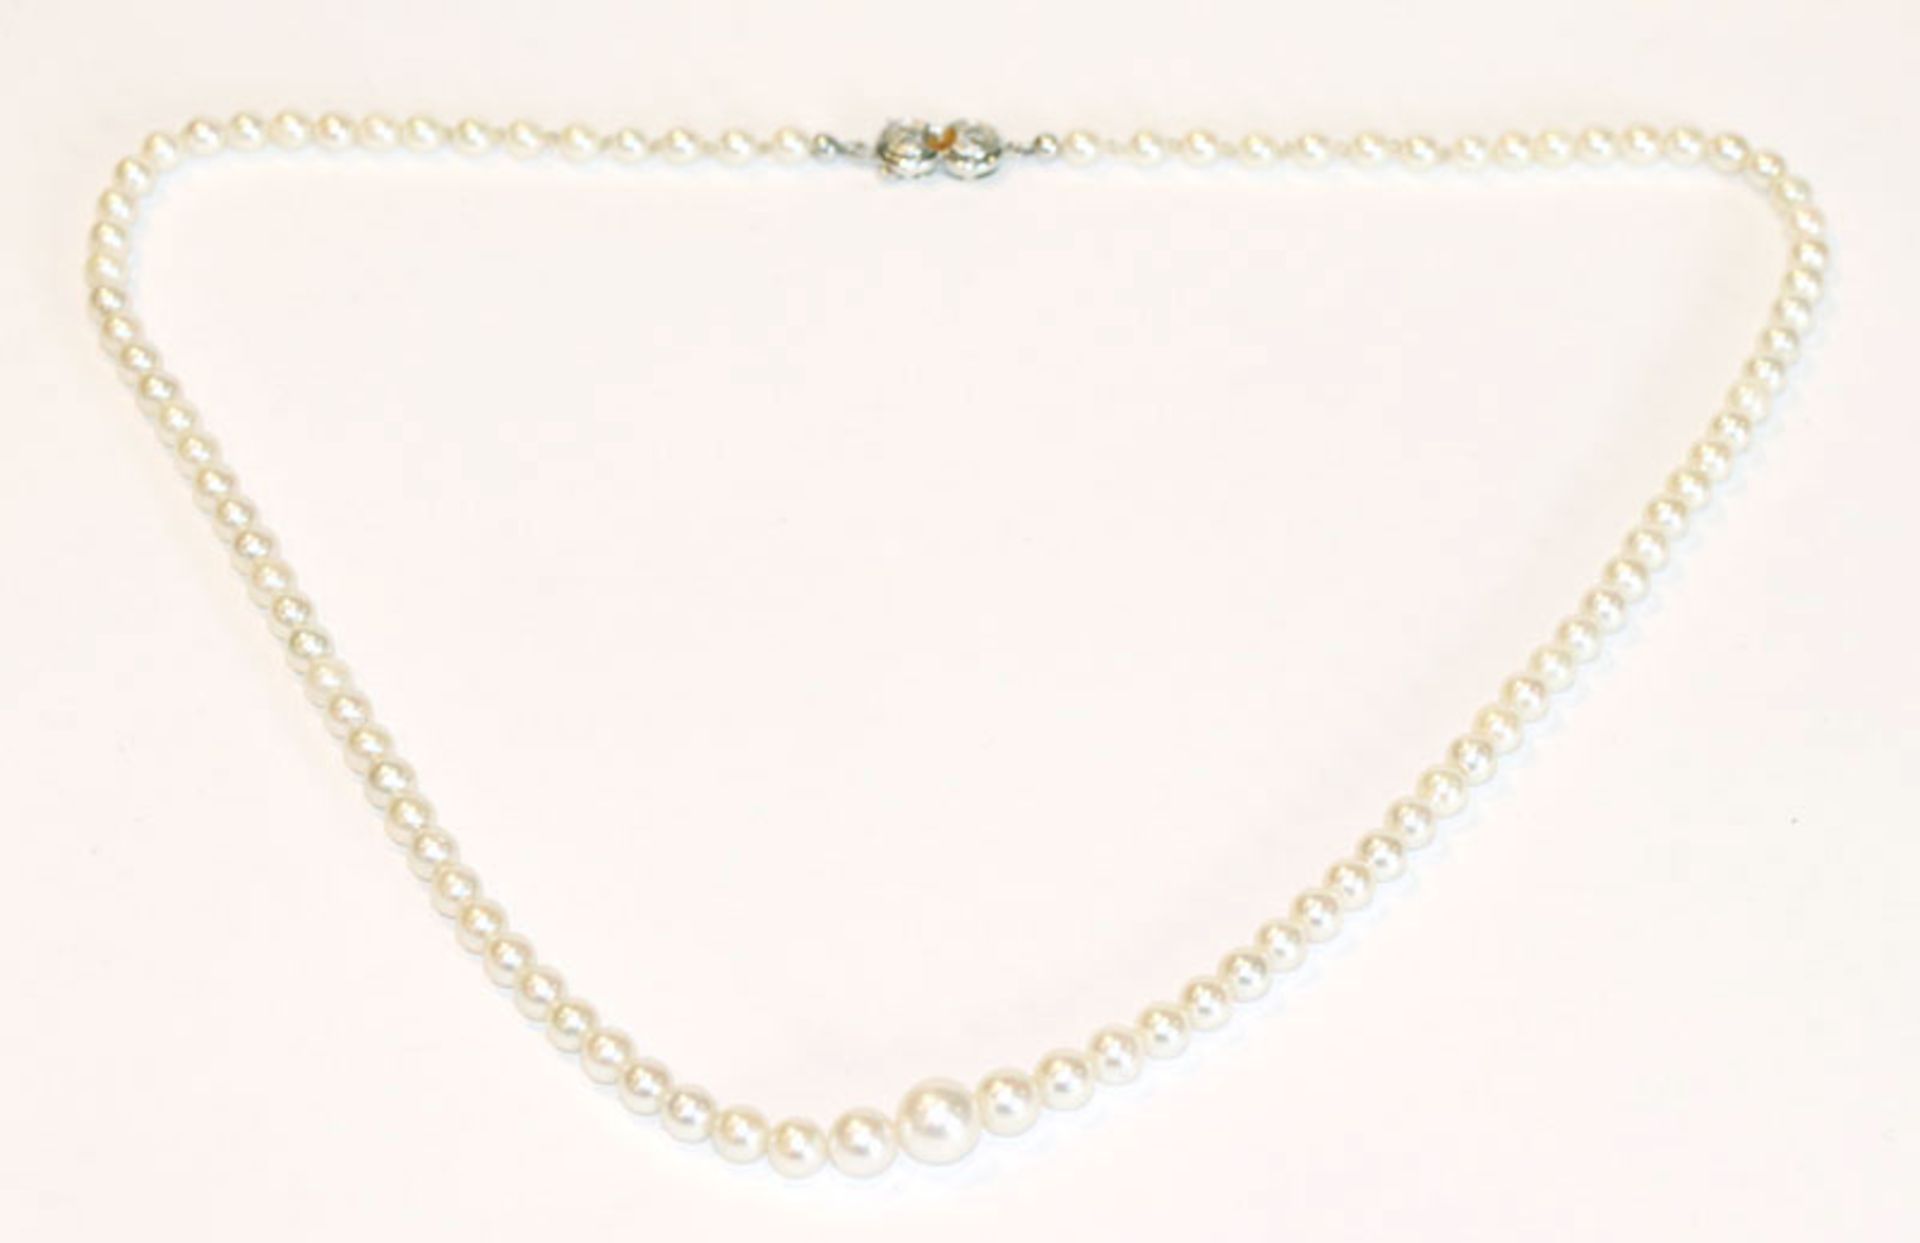 Perlenkette in Verlaufform mit 14 k Weißgold Schließe, Perle fehlt, L 46 cm